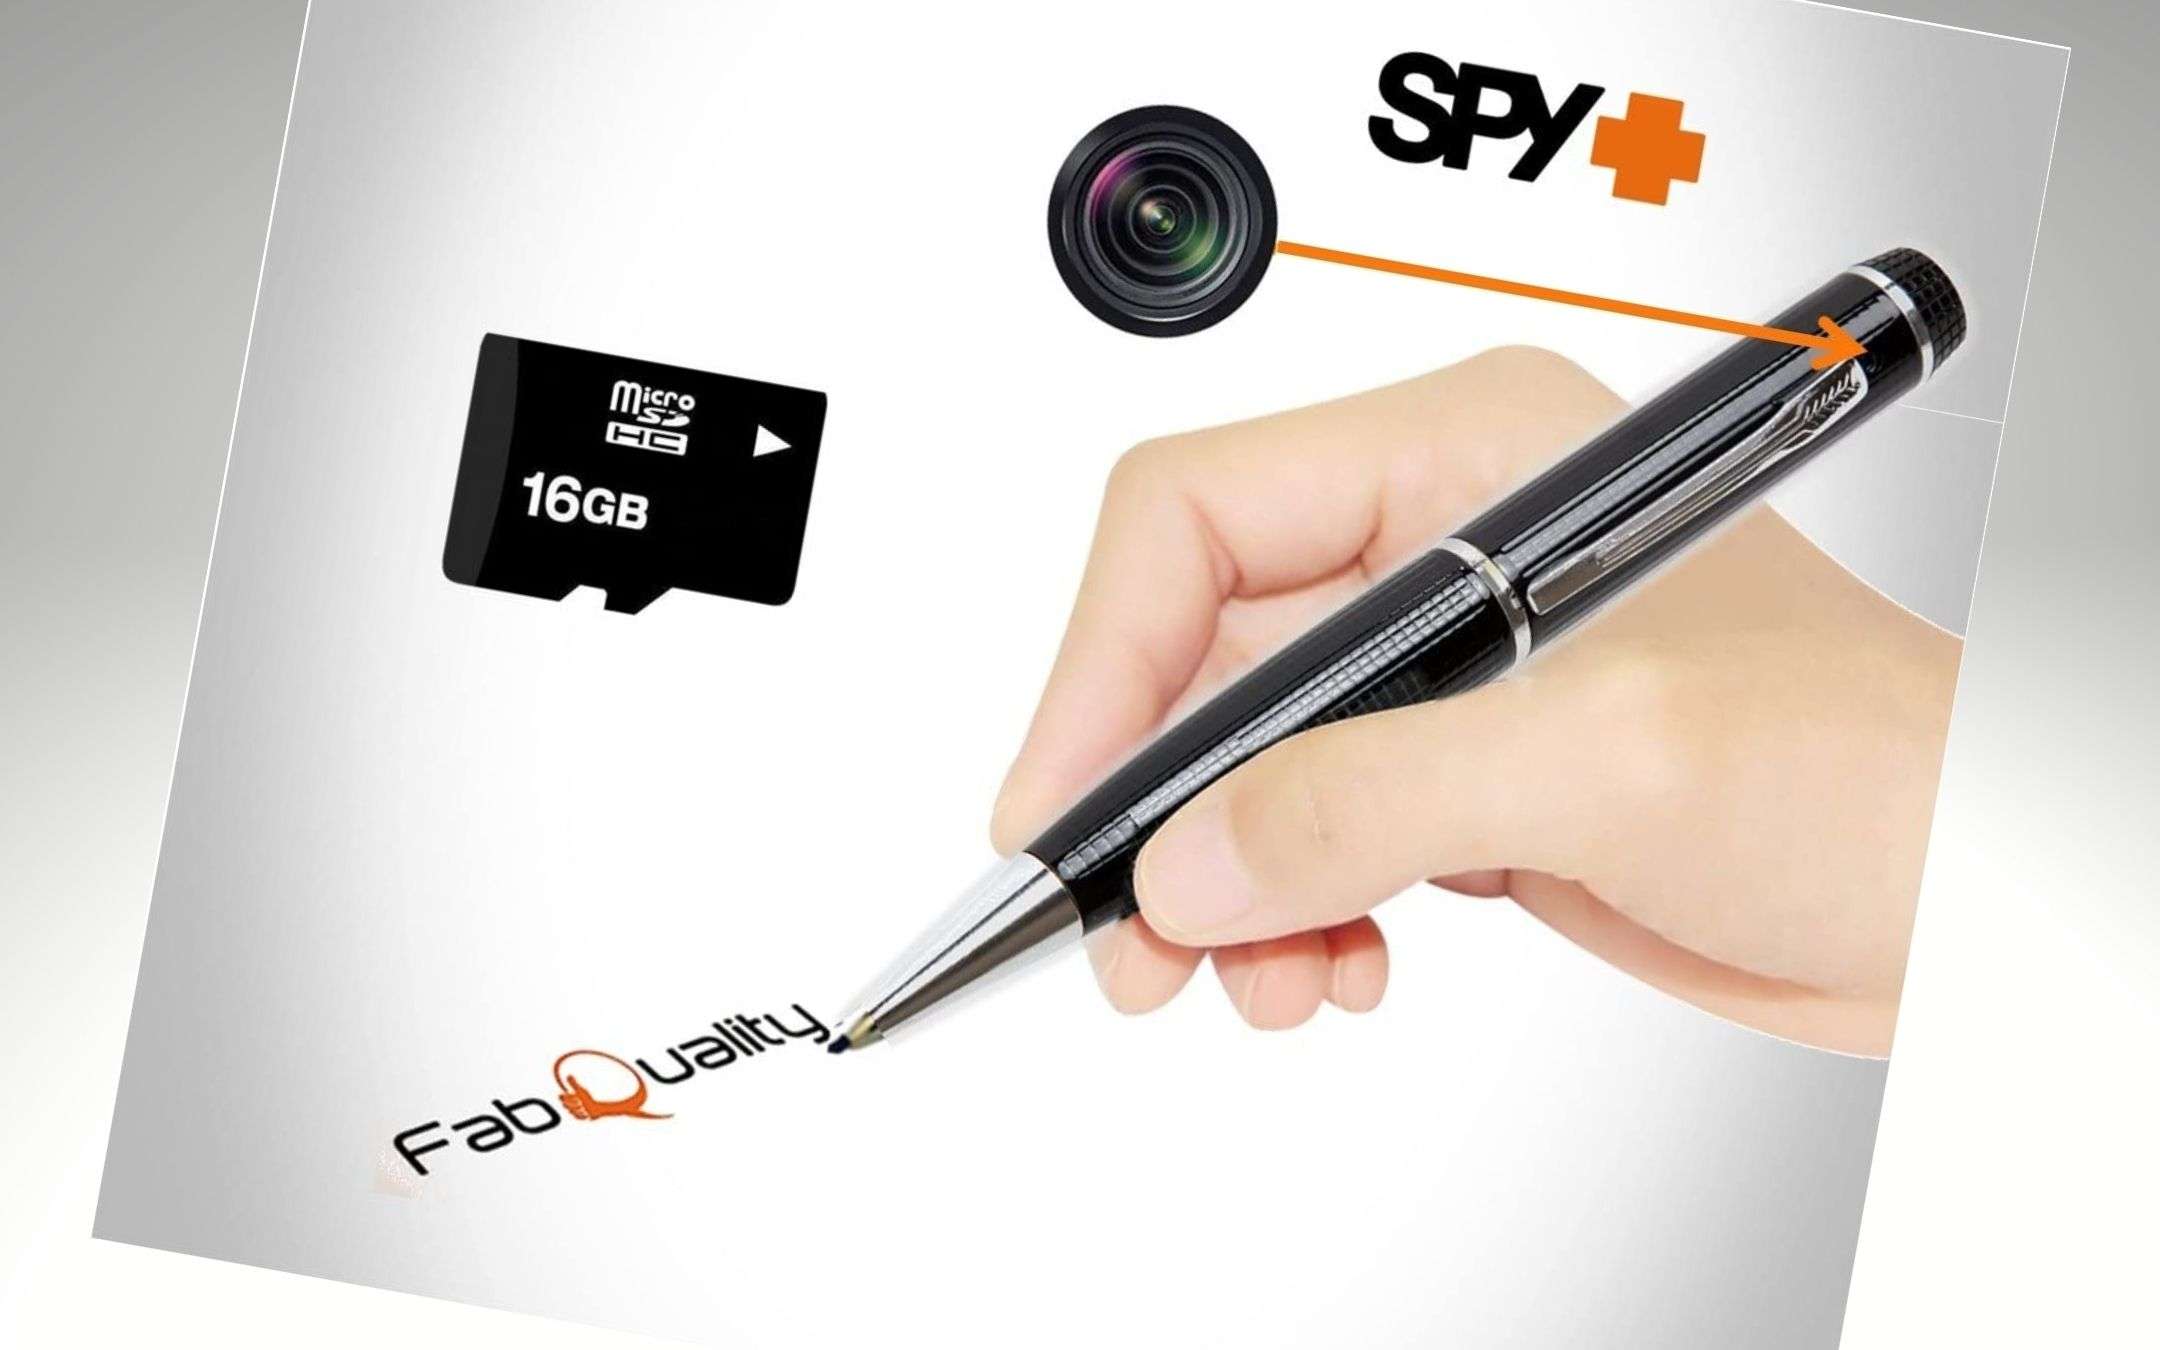 Penna con Microcamera Spia Nascosta: Telecamera Spia Penna FULL HD 1080P -  La Tua Microcamera Segreta per Registrazioni Impeccabili